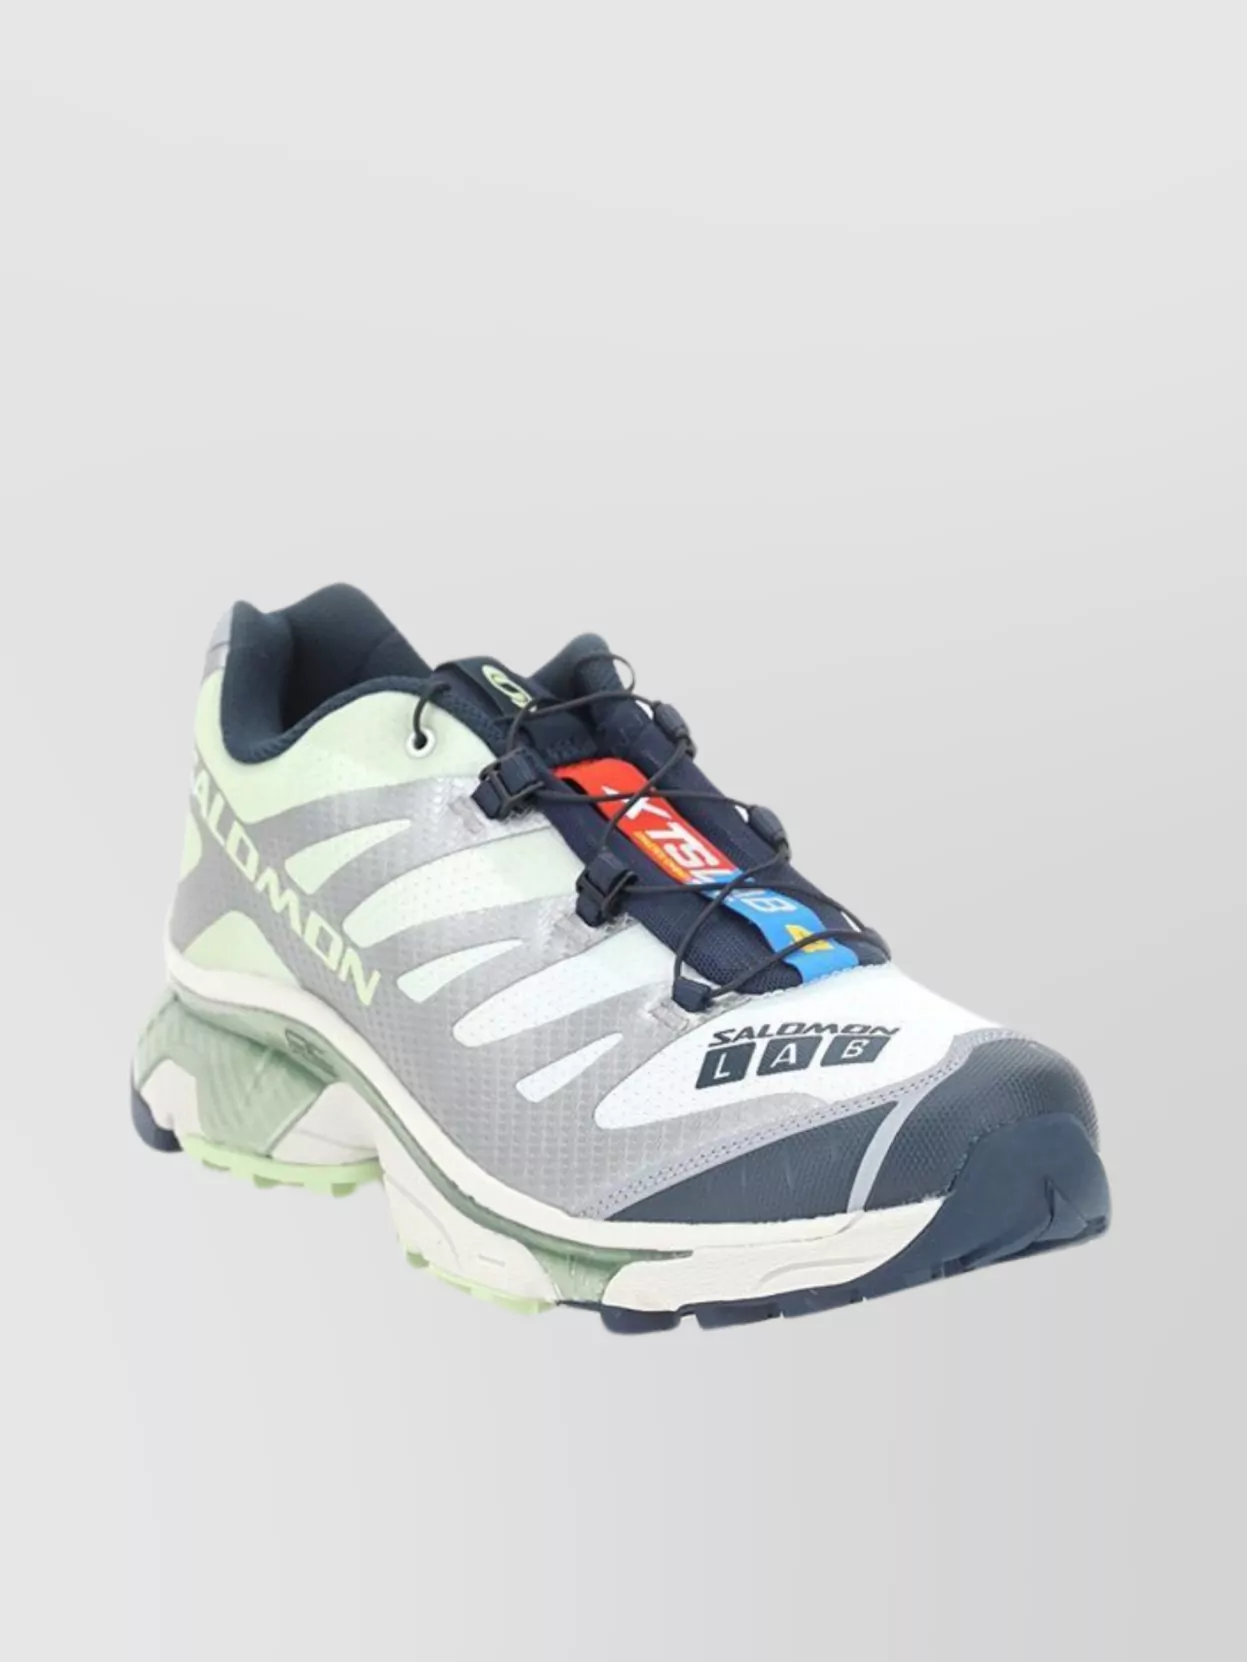 Shop Salomon Og-4 Xt Sneakers With Color Block Design